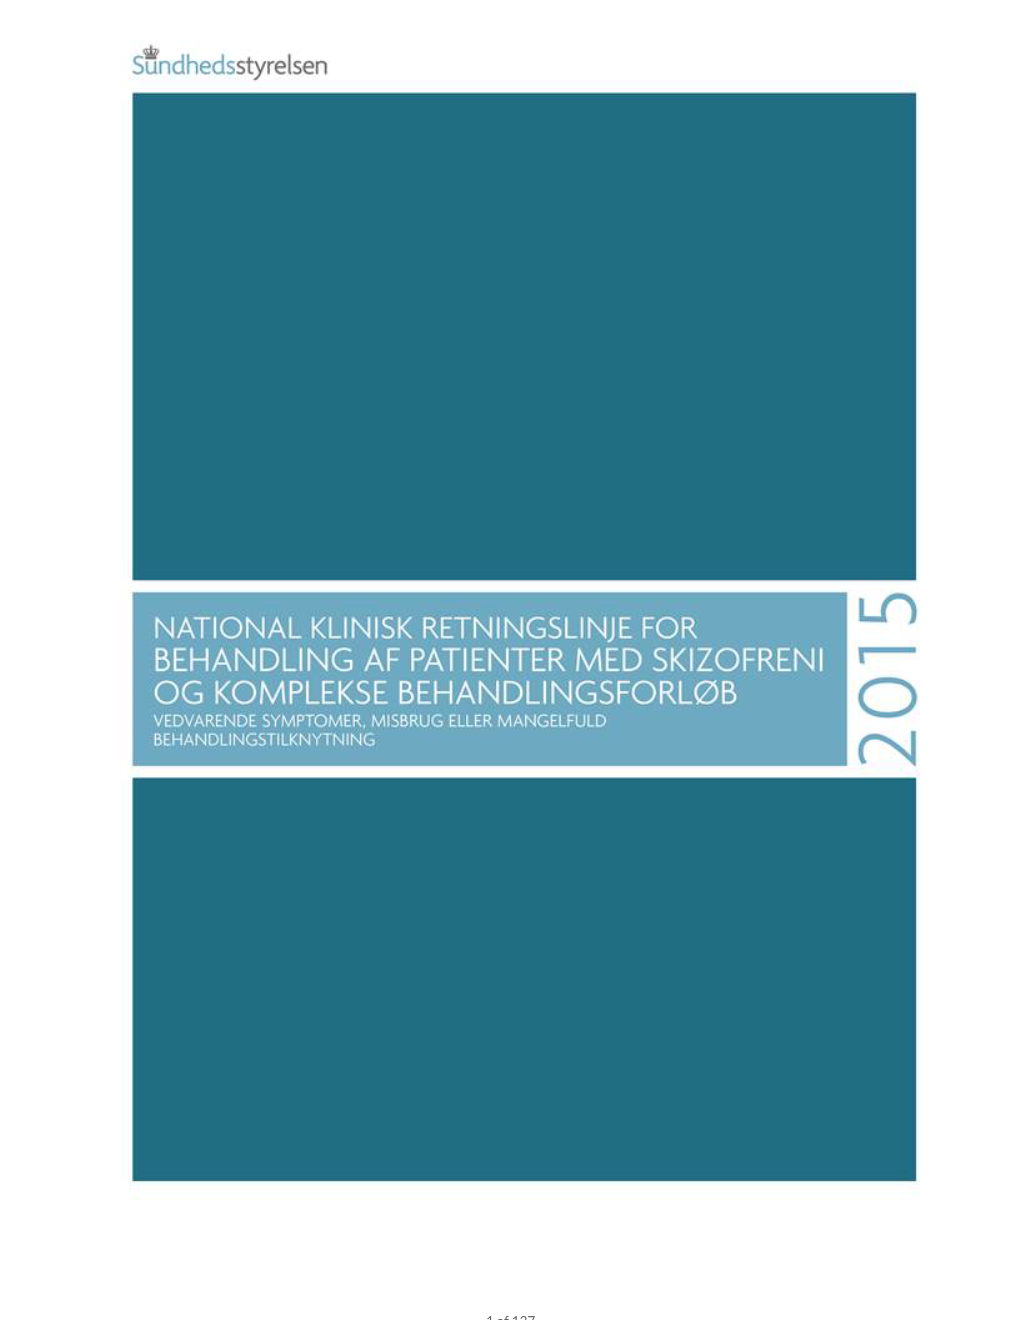 Guideline National Klinisk Retningslinje For